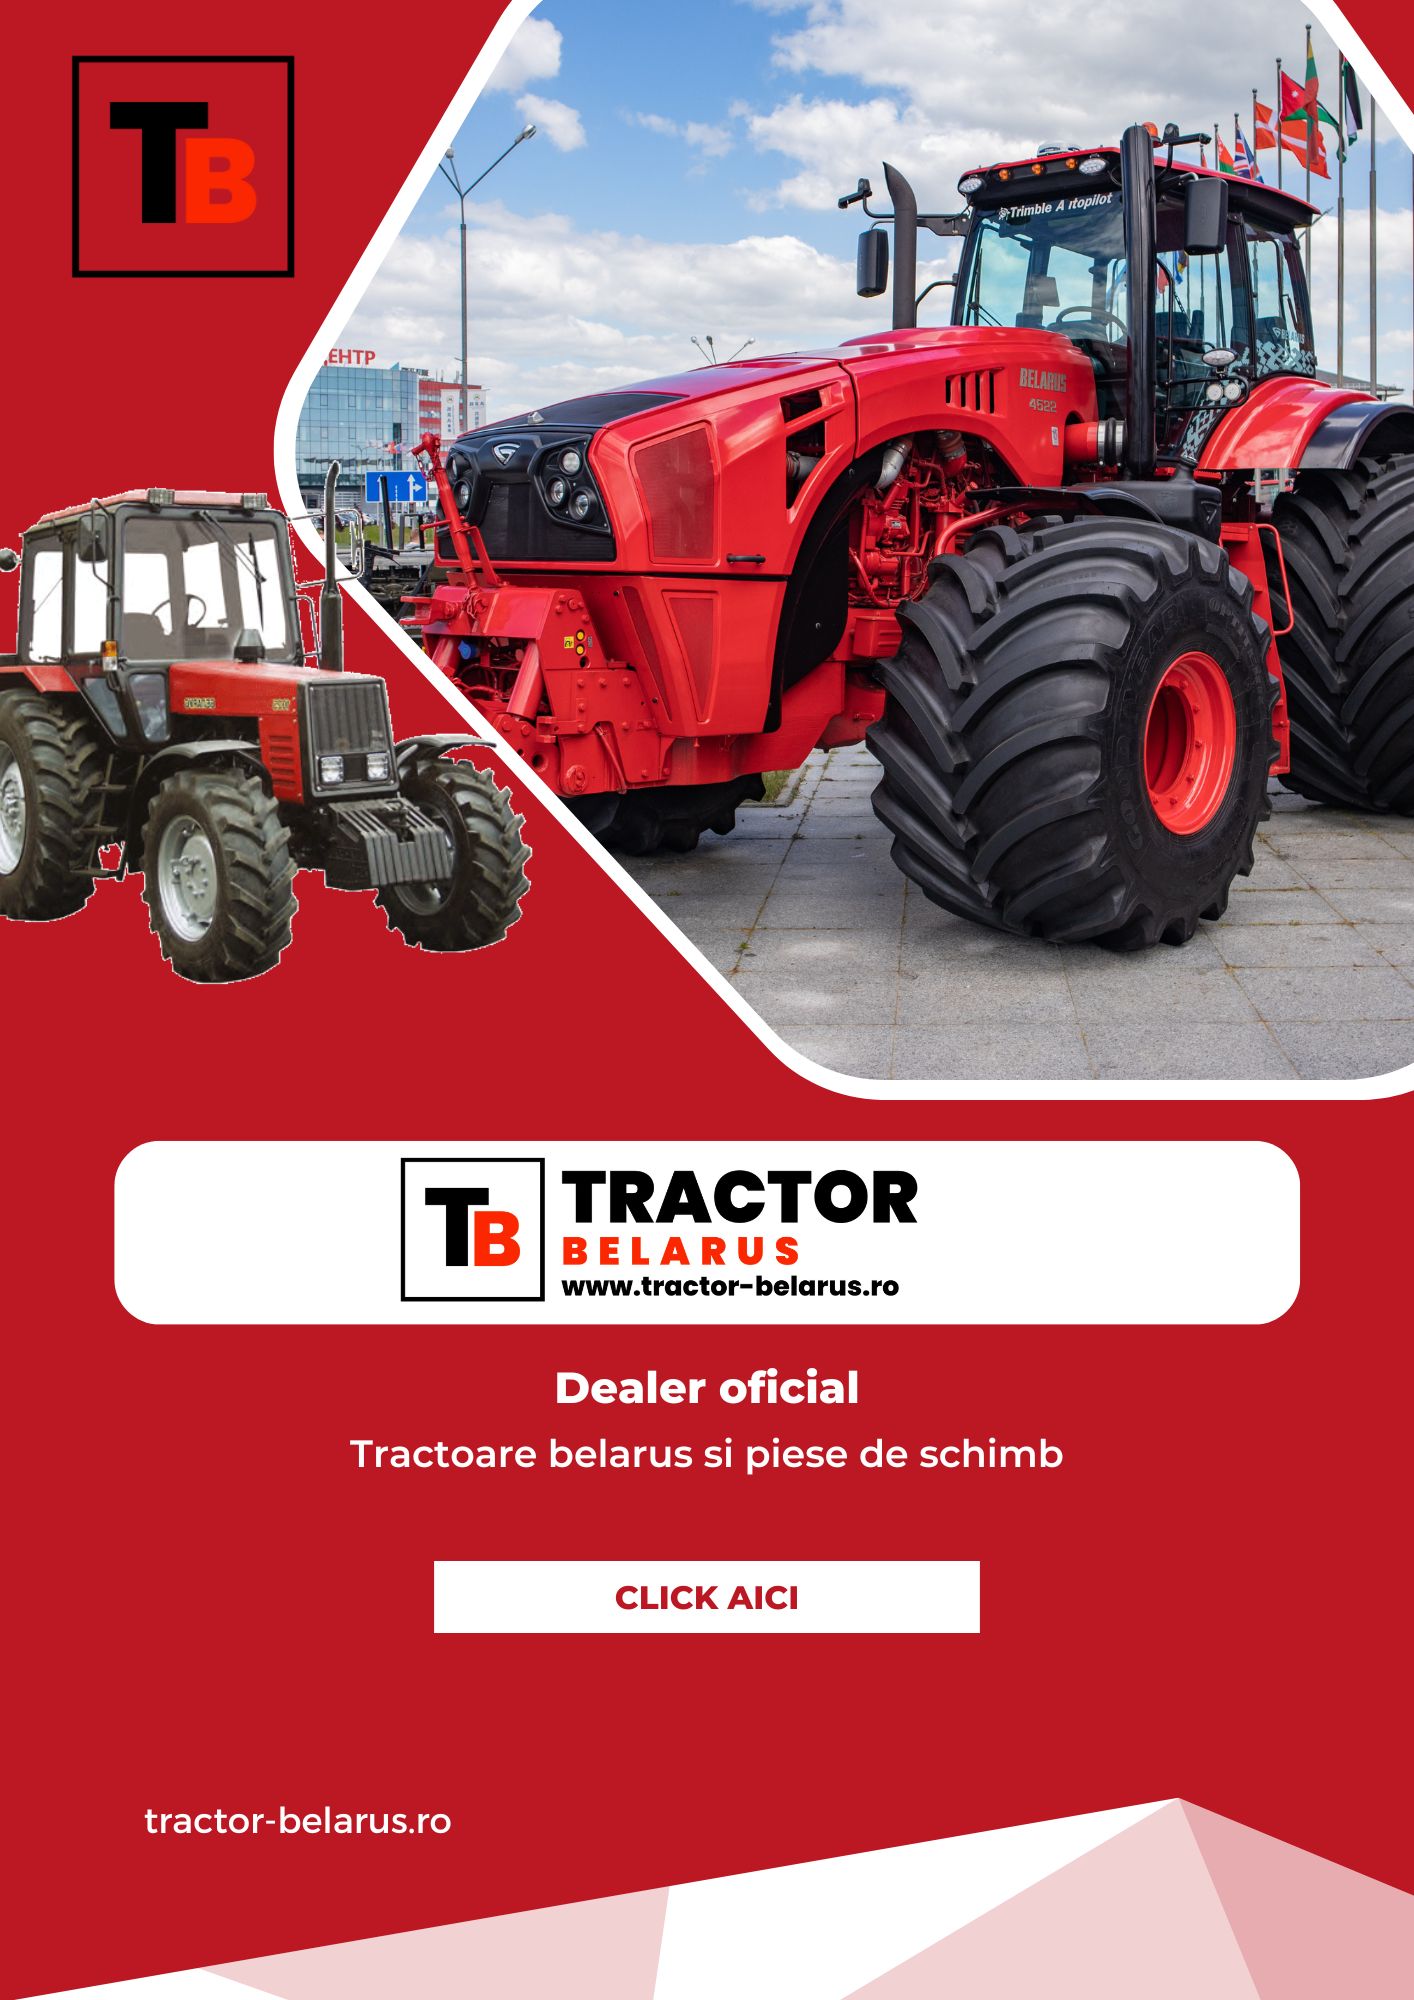 tractor-belarus.ro ad